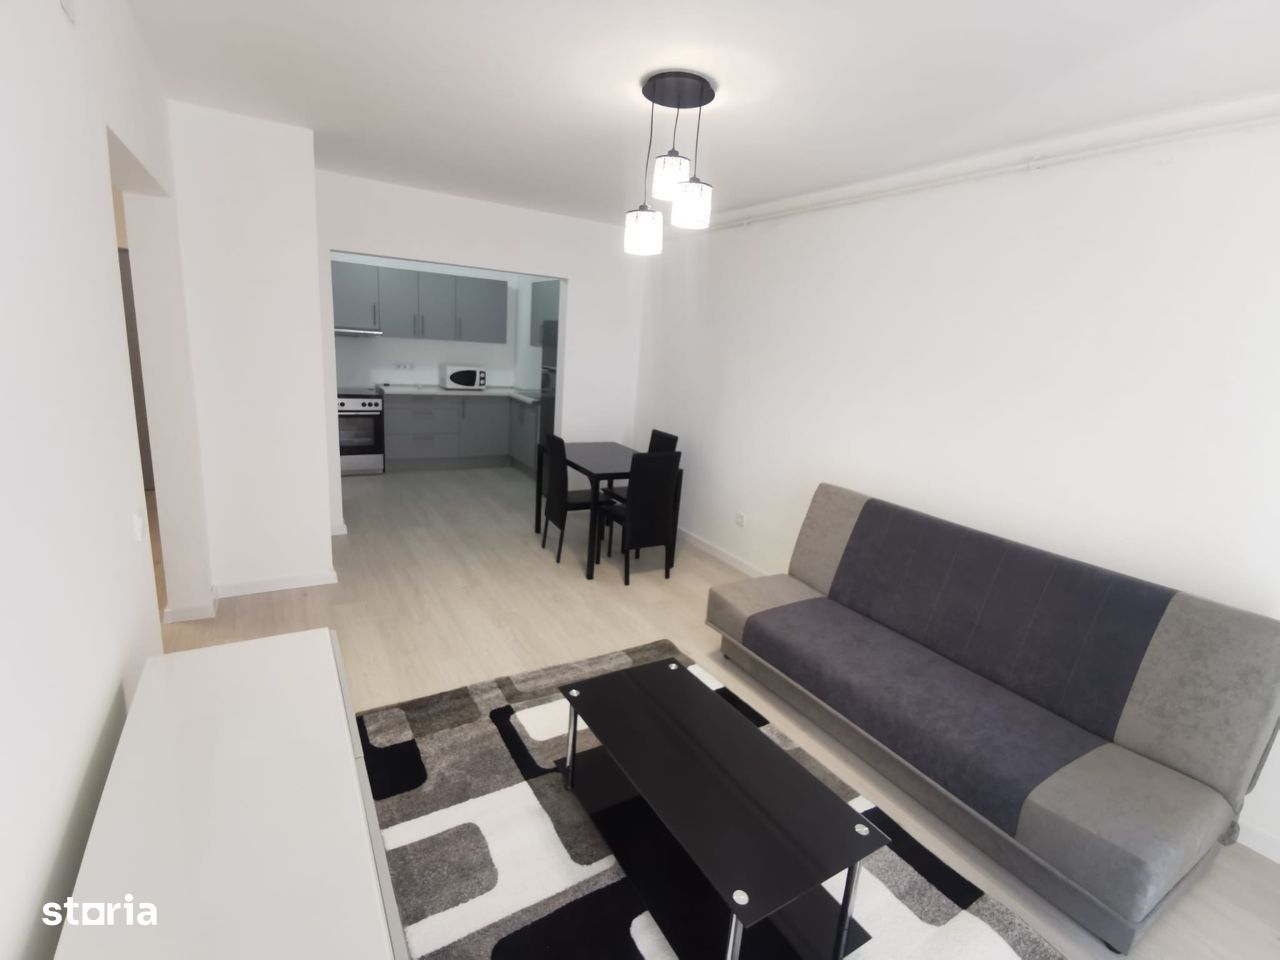 ROANDY-Apartament in bloc nou,prima inchiriere, Blv.Bucuresti